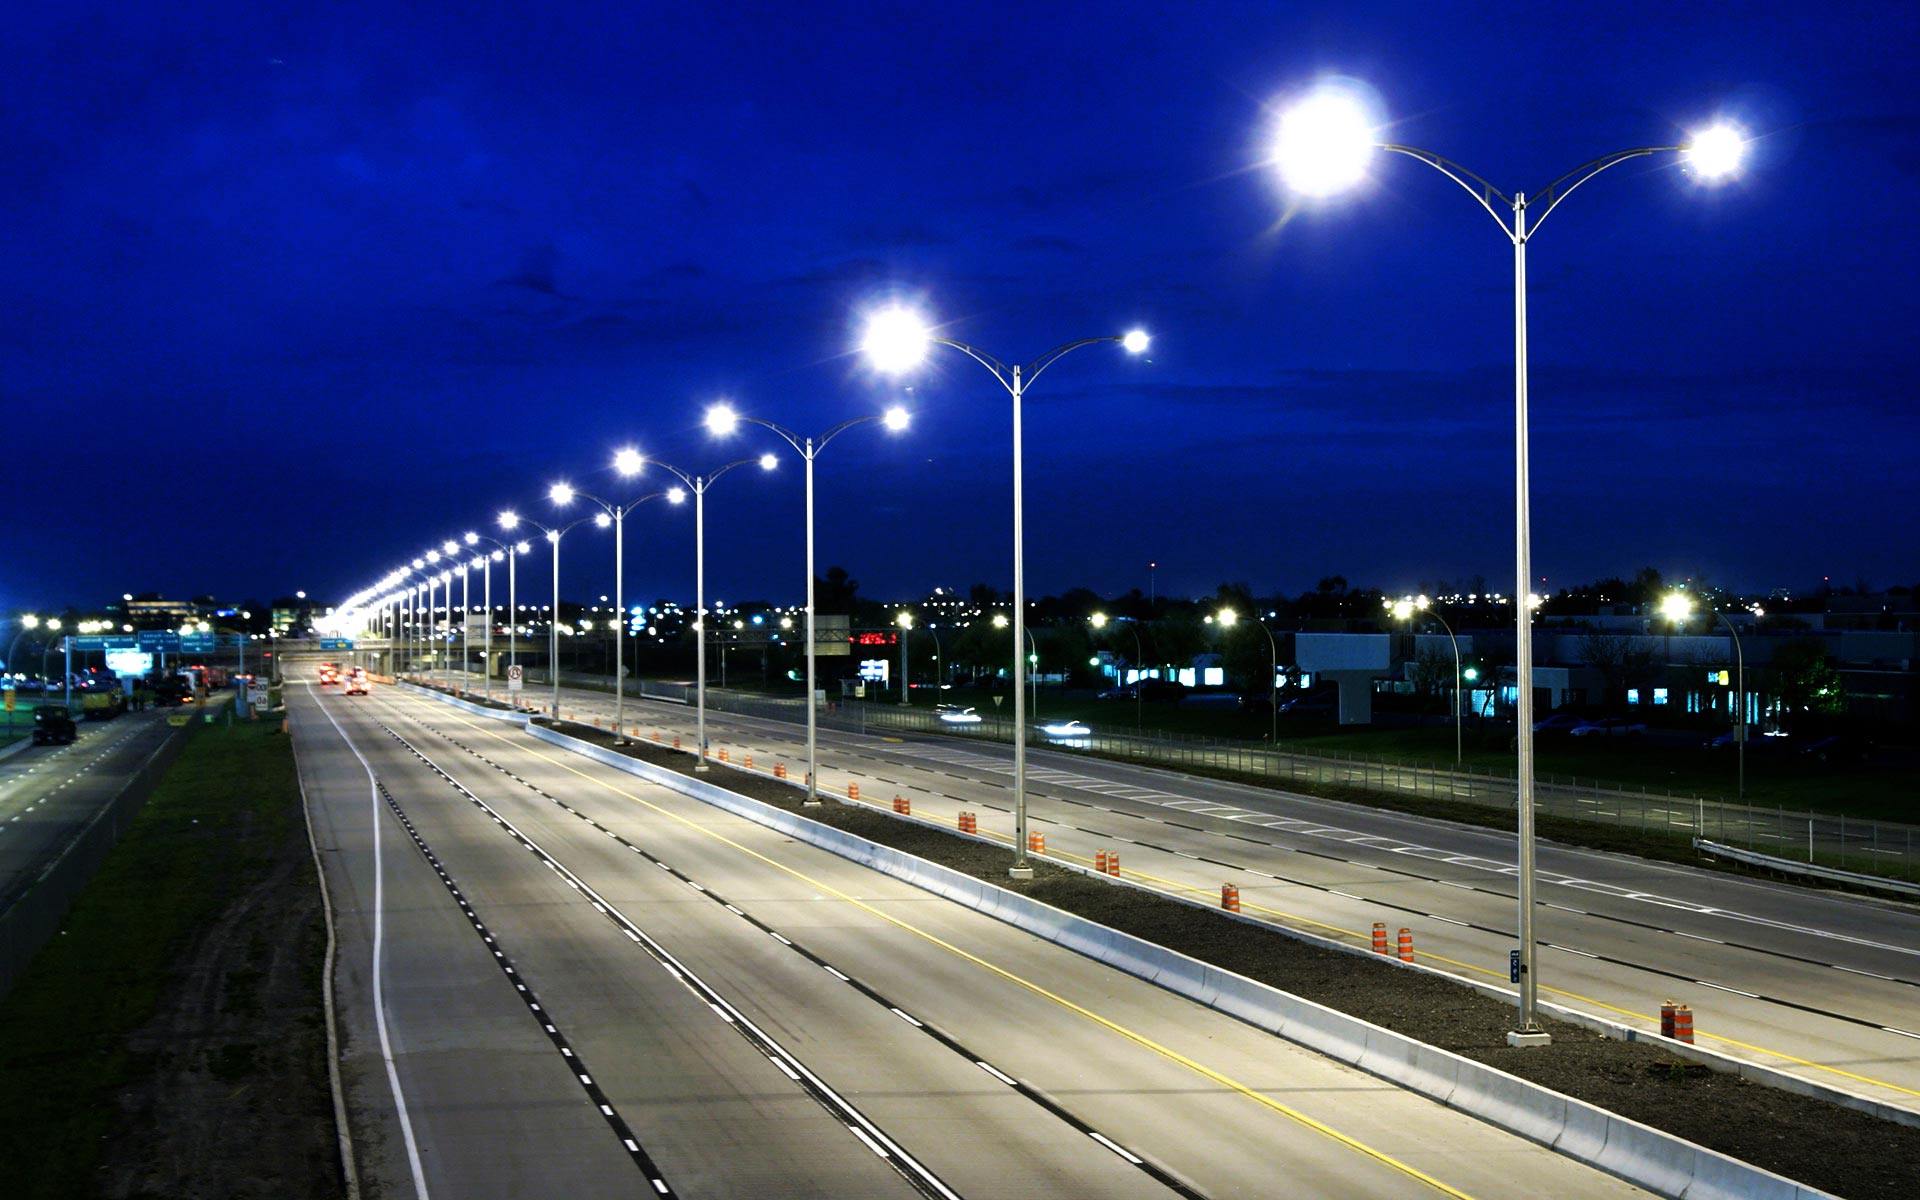 Hersteller professioneller Energiespargeräte zur Steuerung und Überwachung der Straßenbeleuchtung